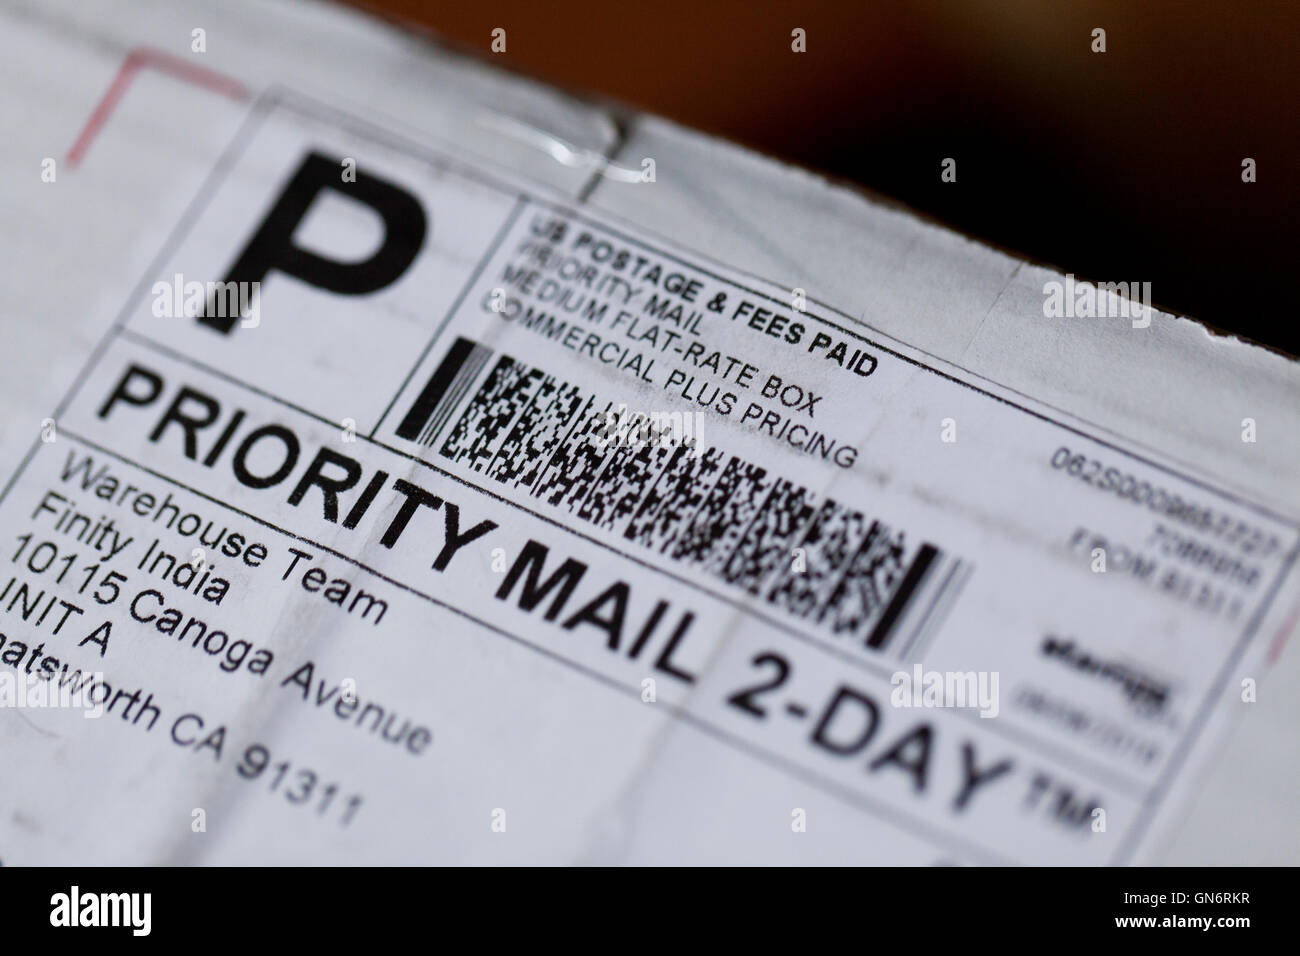 USPS Priority Mail 2-giorno etichetta di spedizione sul pacchetto ( posta prioritaria ) - USA Foto Stock